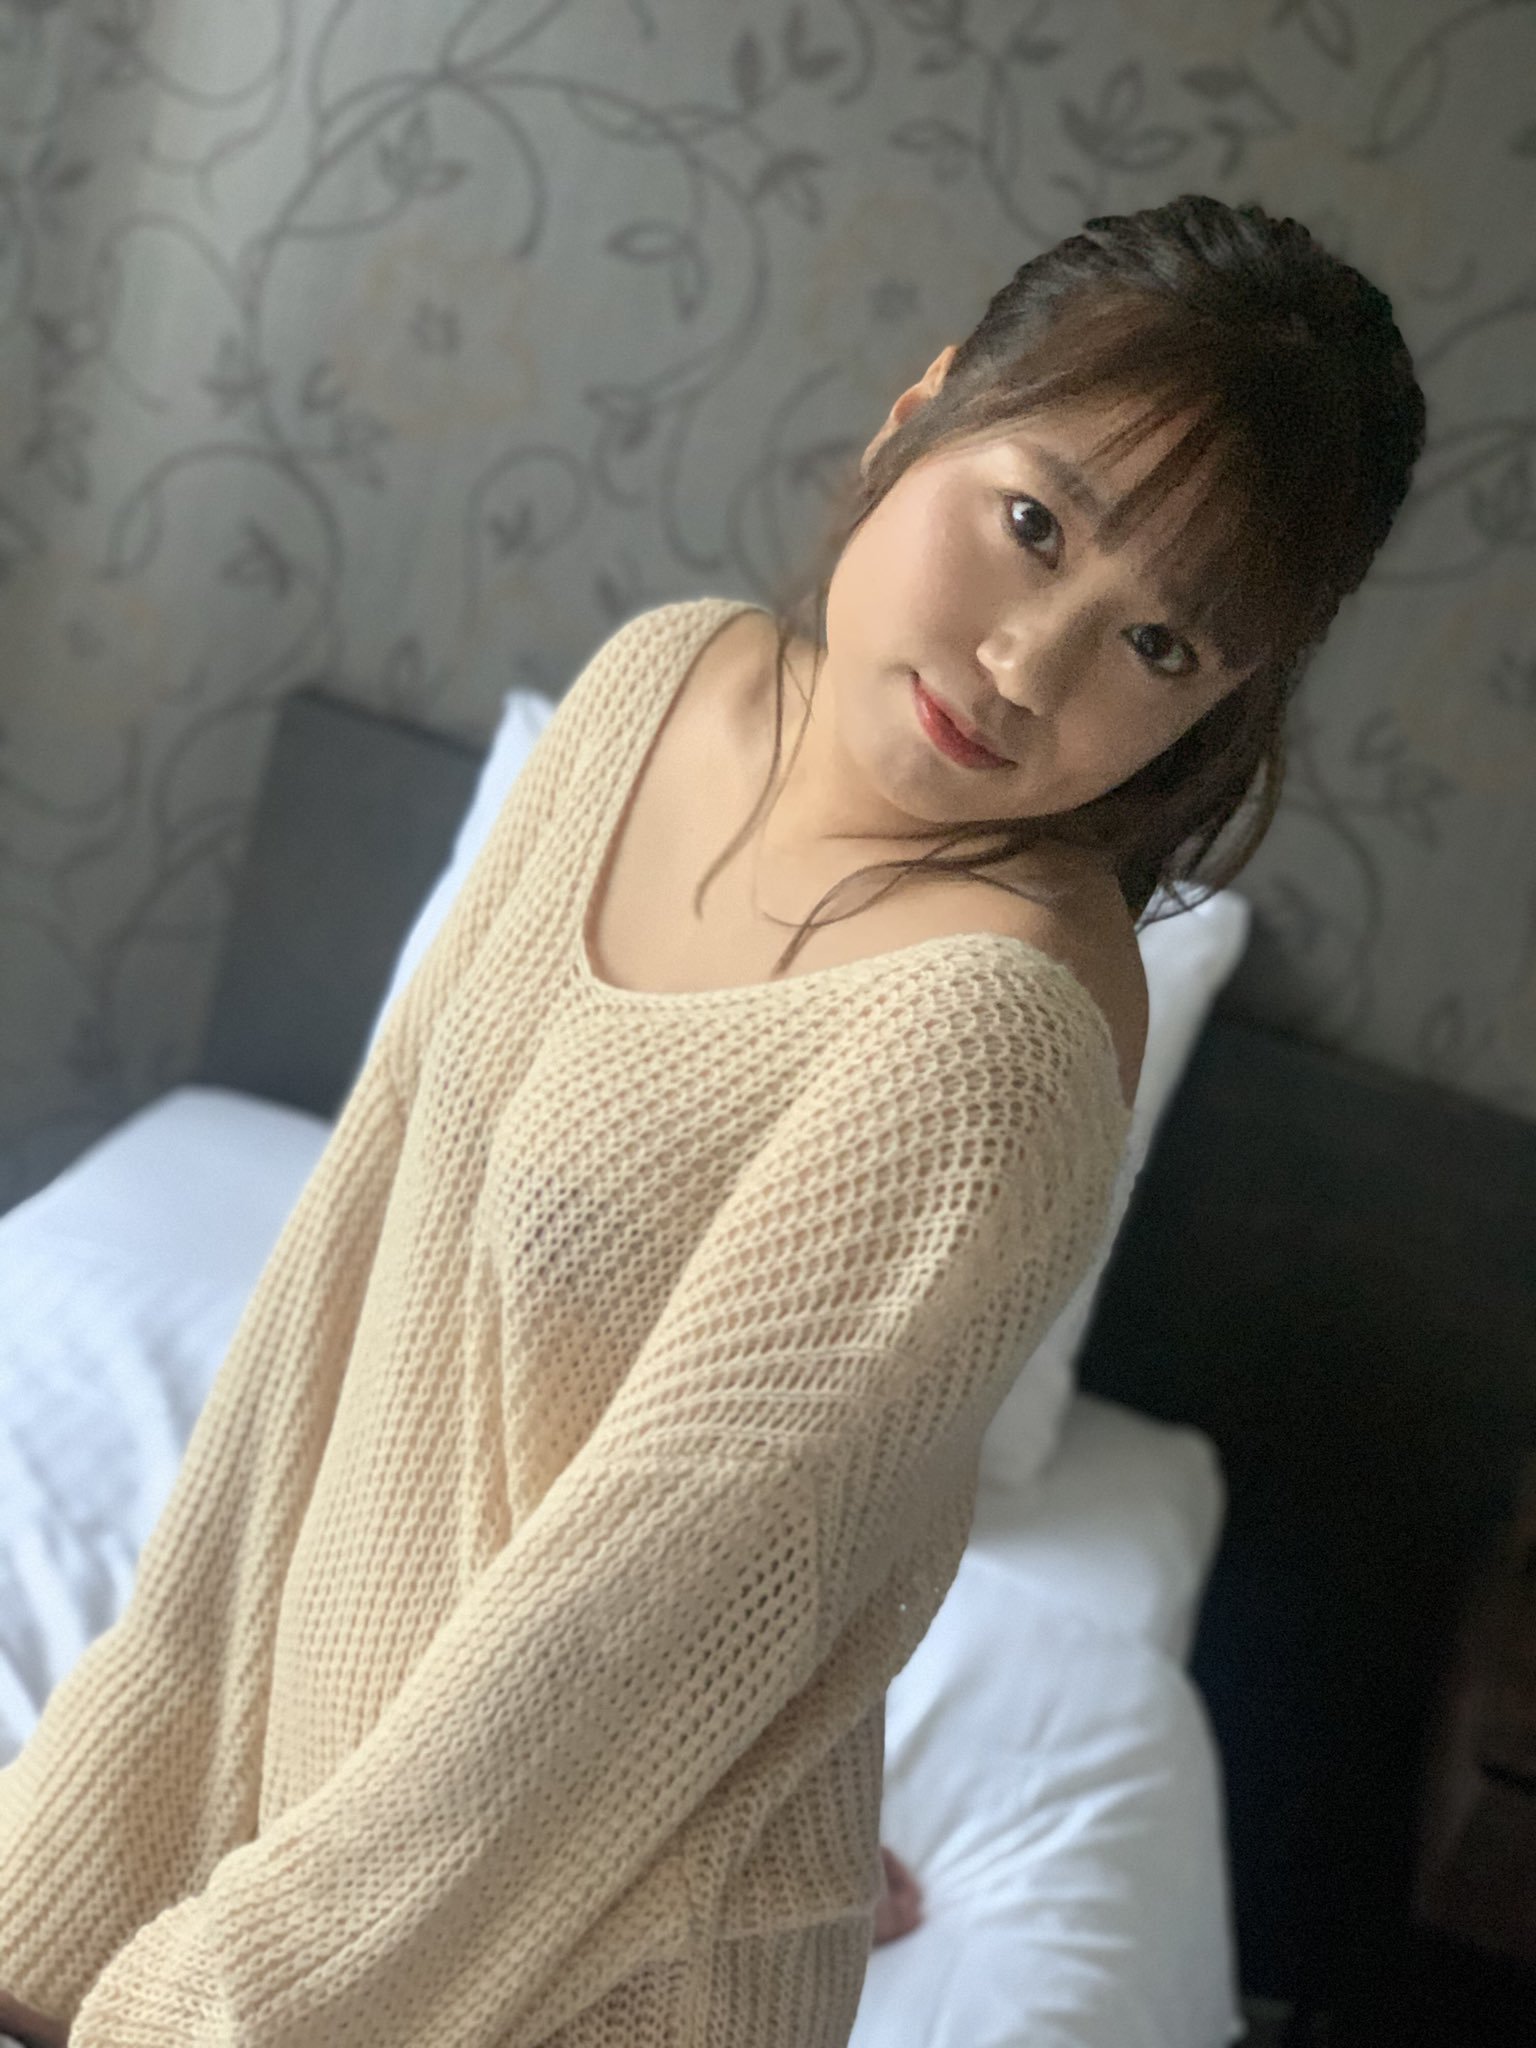 從 NMB48 畢業後解禁啦！25 歲「沖田彩華」脫衣甜曬「飽滿美乳」